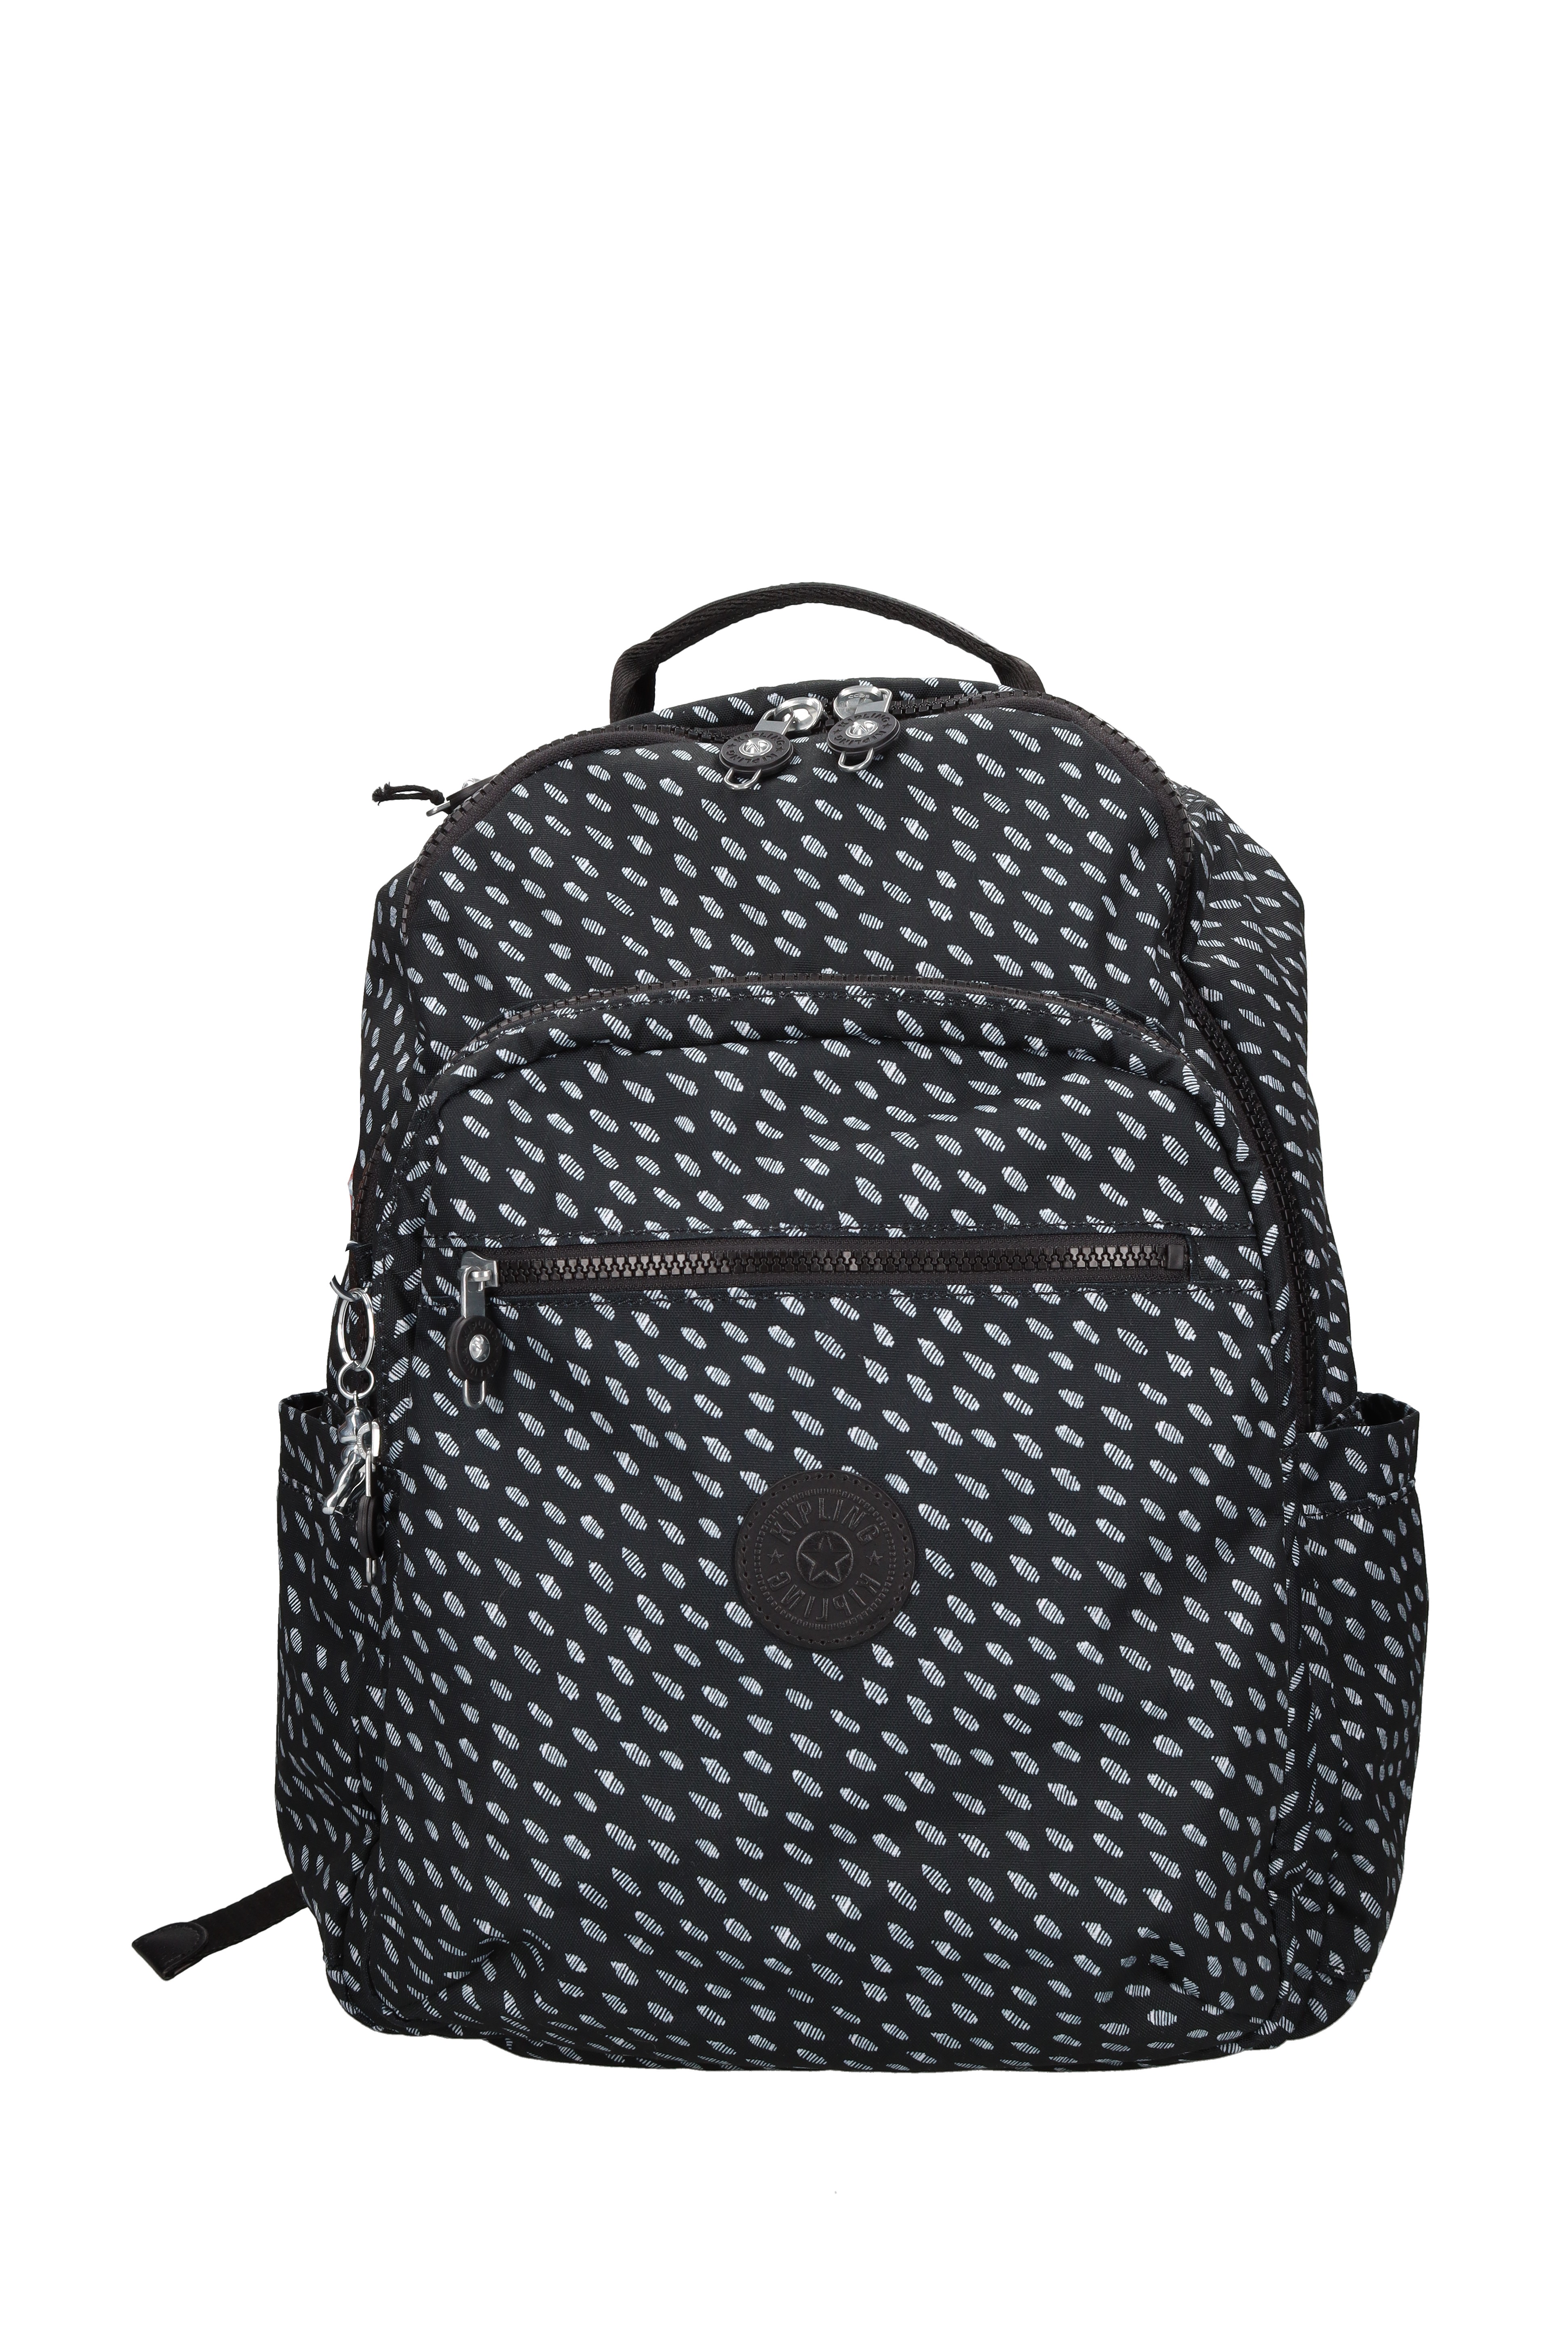 Fabric backpack - KIPLING - Ginevra calzature